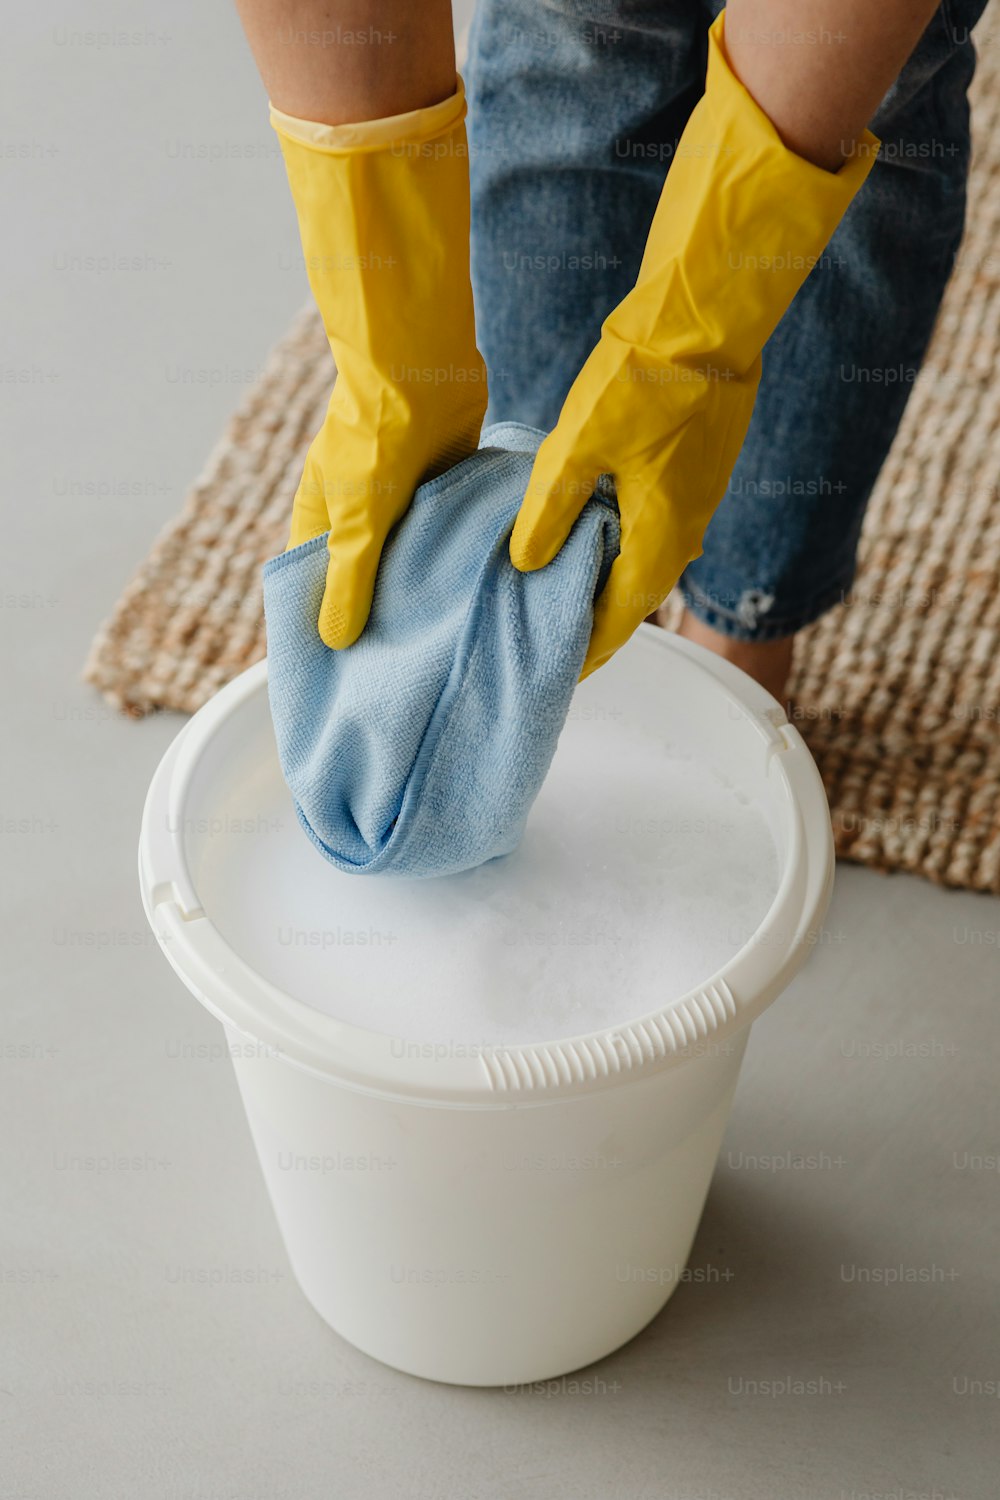 Eine Person in gelben Handschuhen reinigt einen Eimer